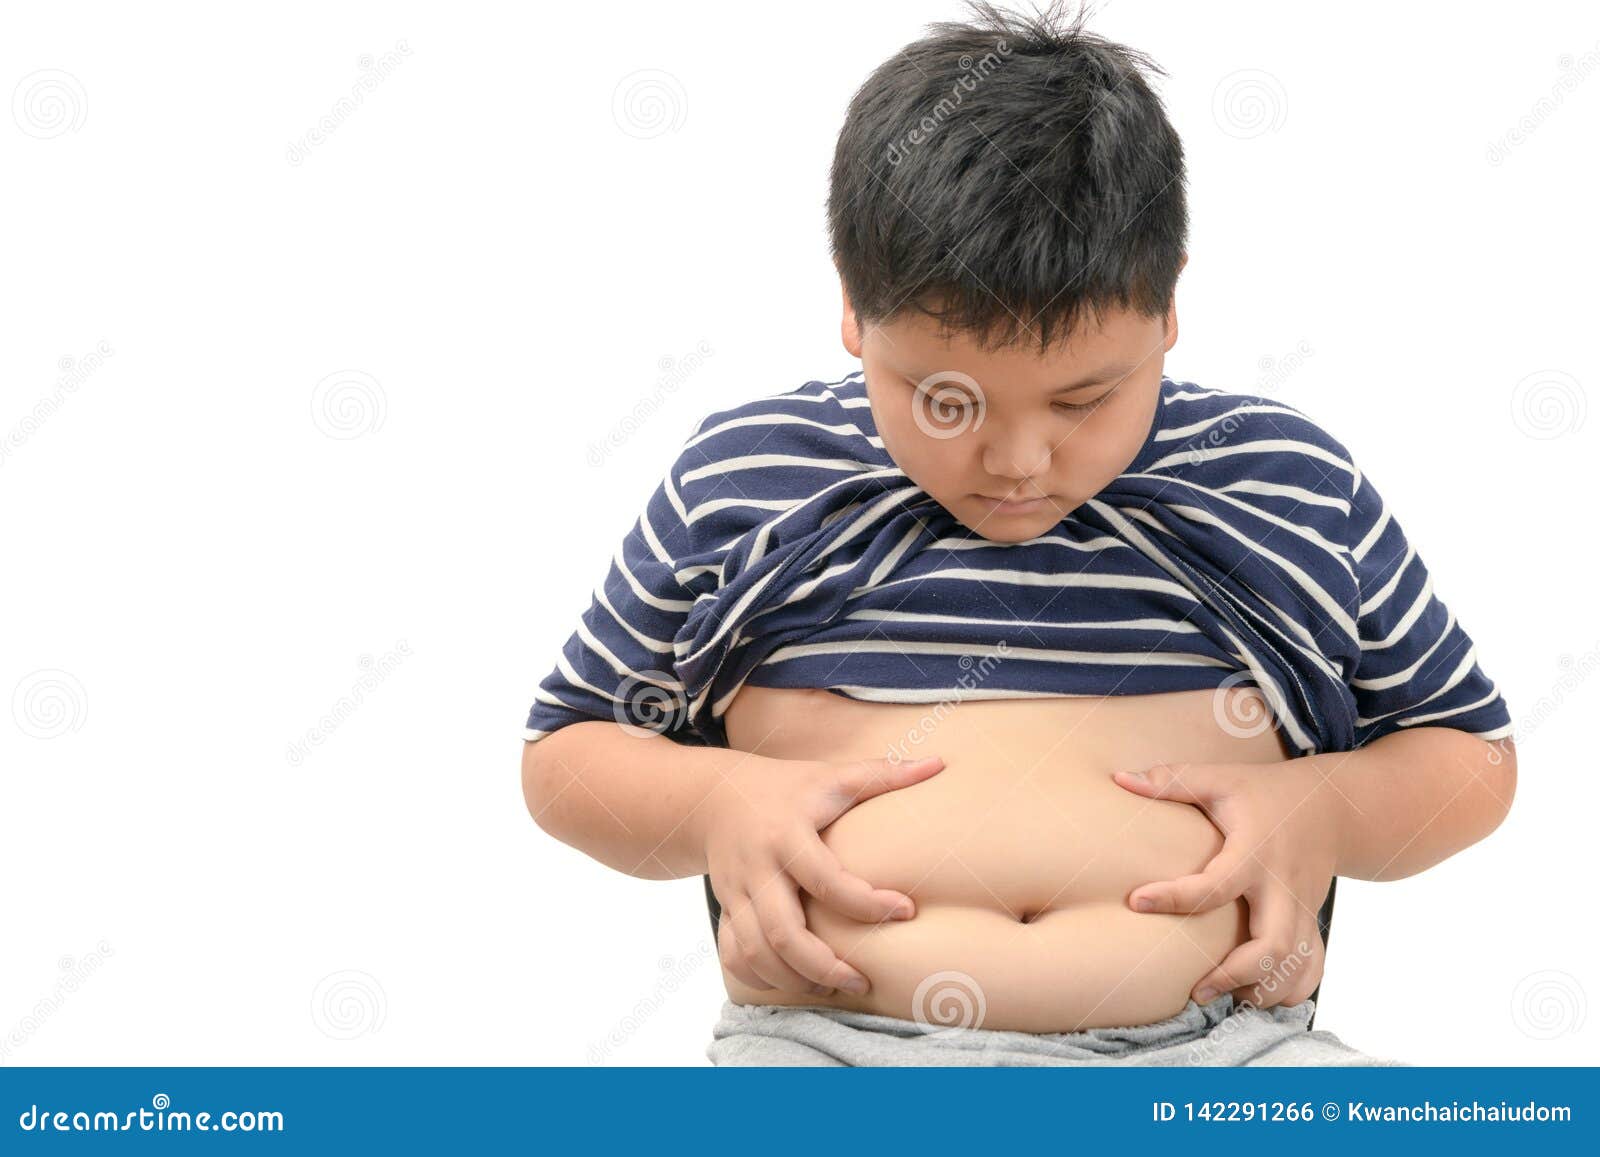 儿童肥胖的危害，远远超过了你的想象_澎湃号·湃客_澎湃新闻-The Paper